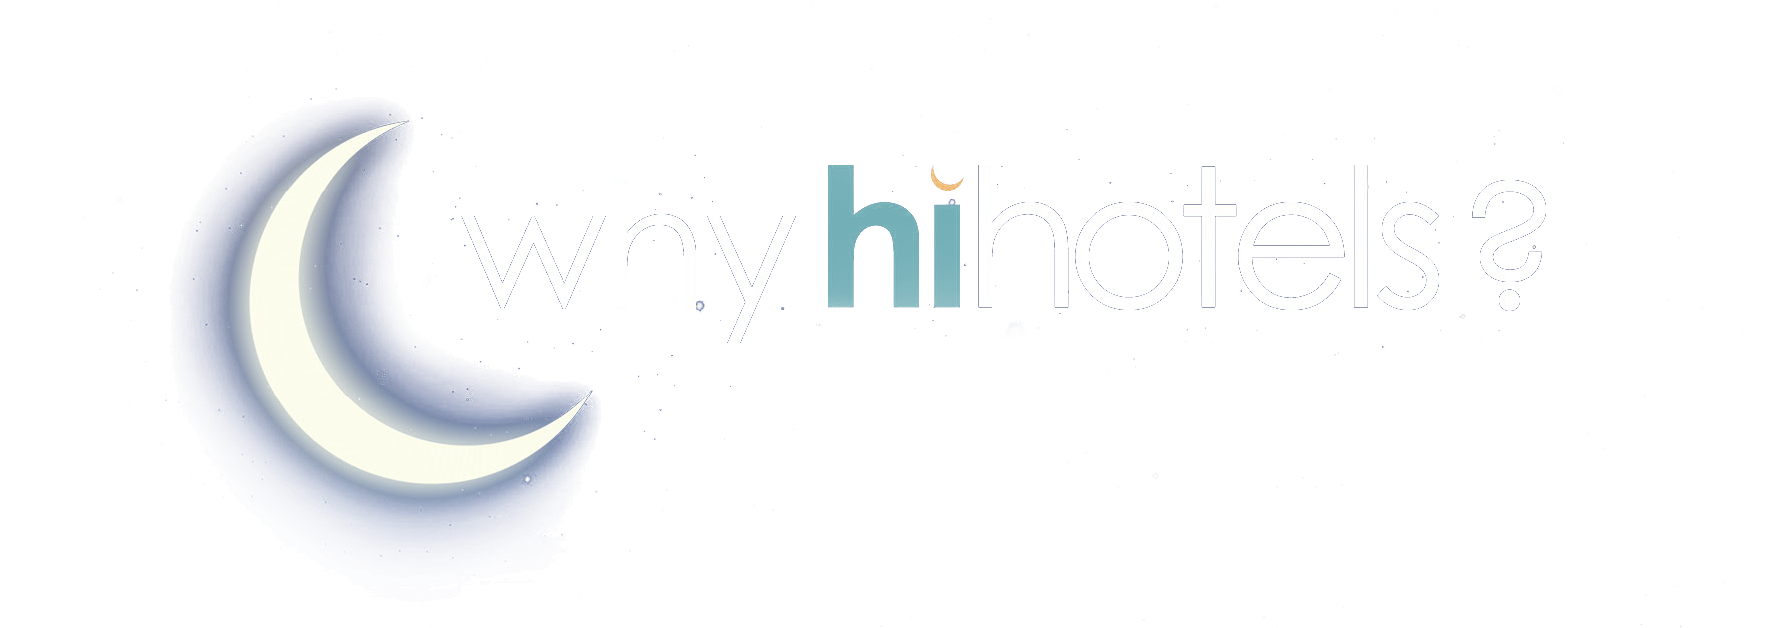 2-Why-hihotels-v2-title